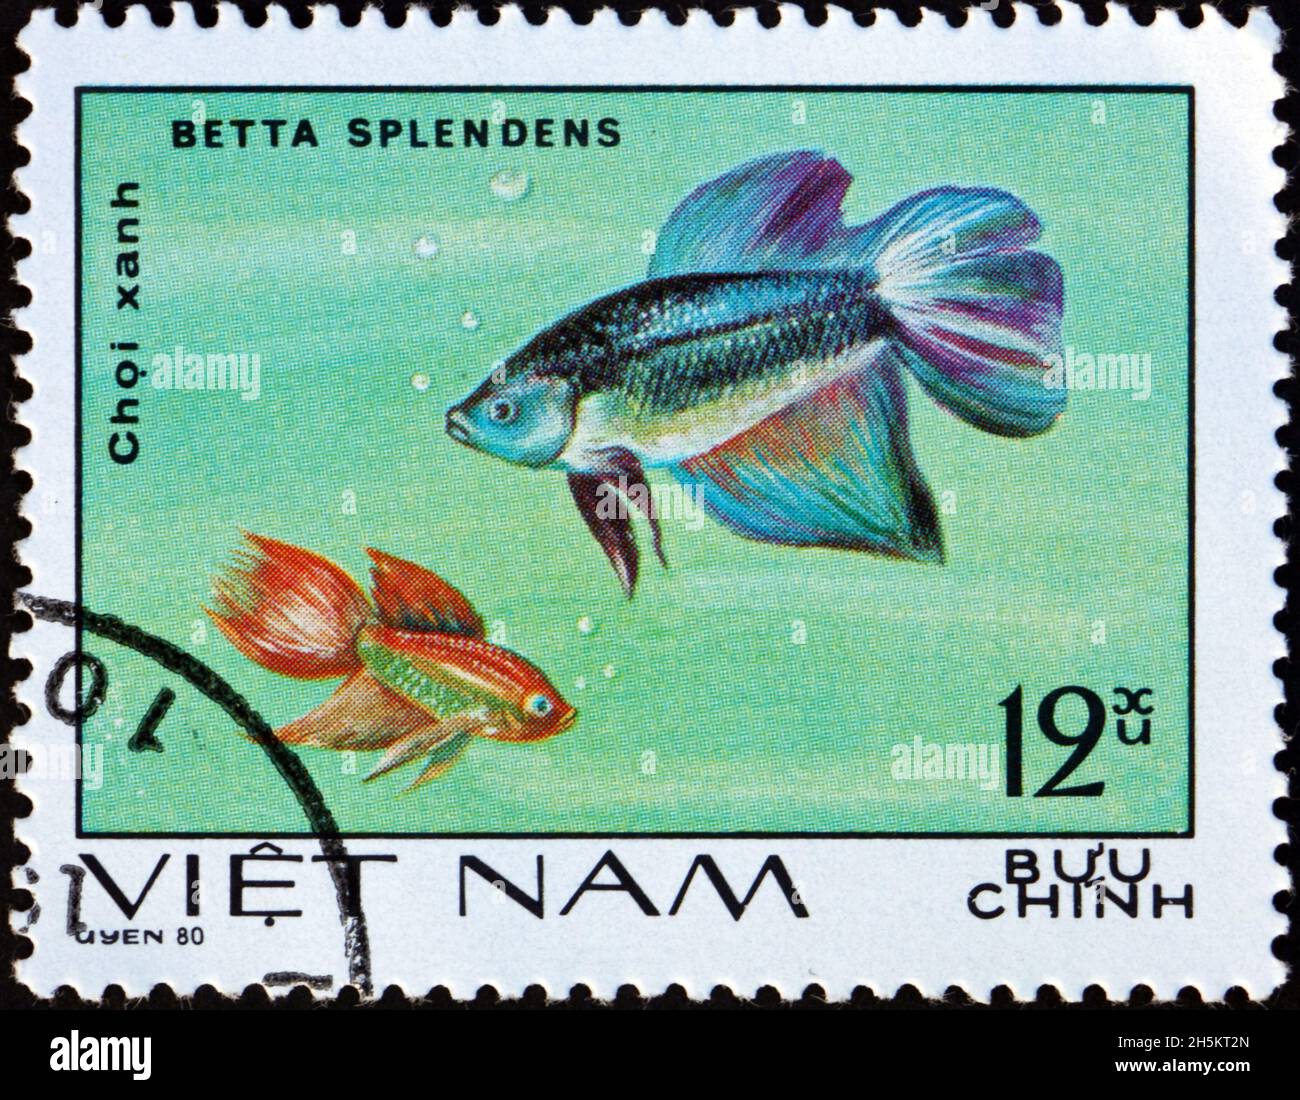 VIETNAM - UM 1981: Eine in Vietnam gedruckte Marke zeigt siamesische Kampffische, Betta splendens, eine Art tropischer Süßwasserfische, um 1981 Stockfoto